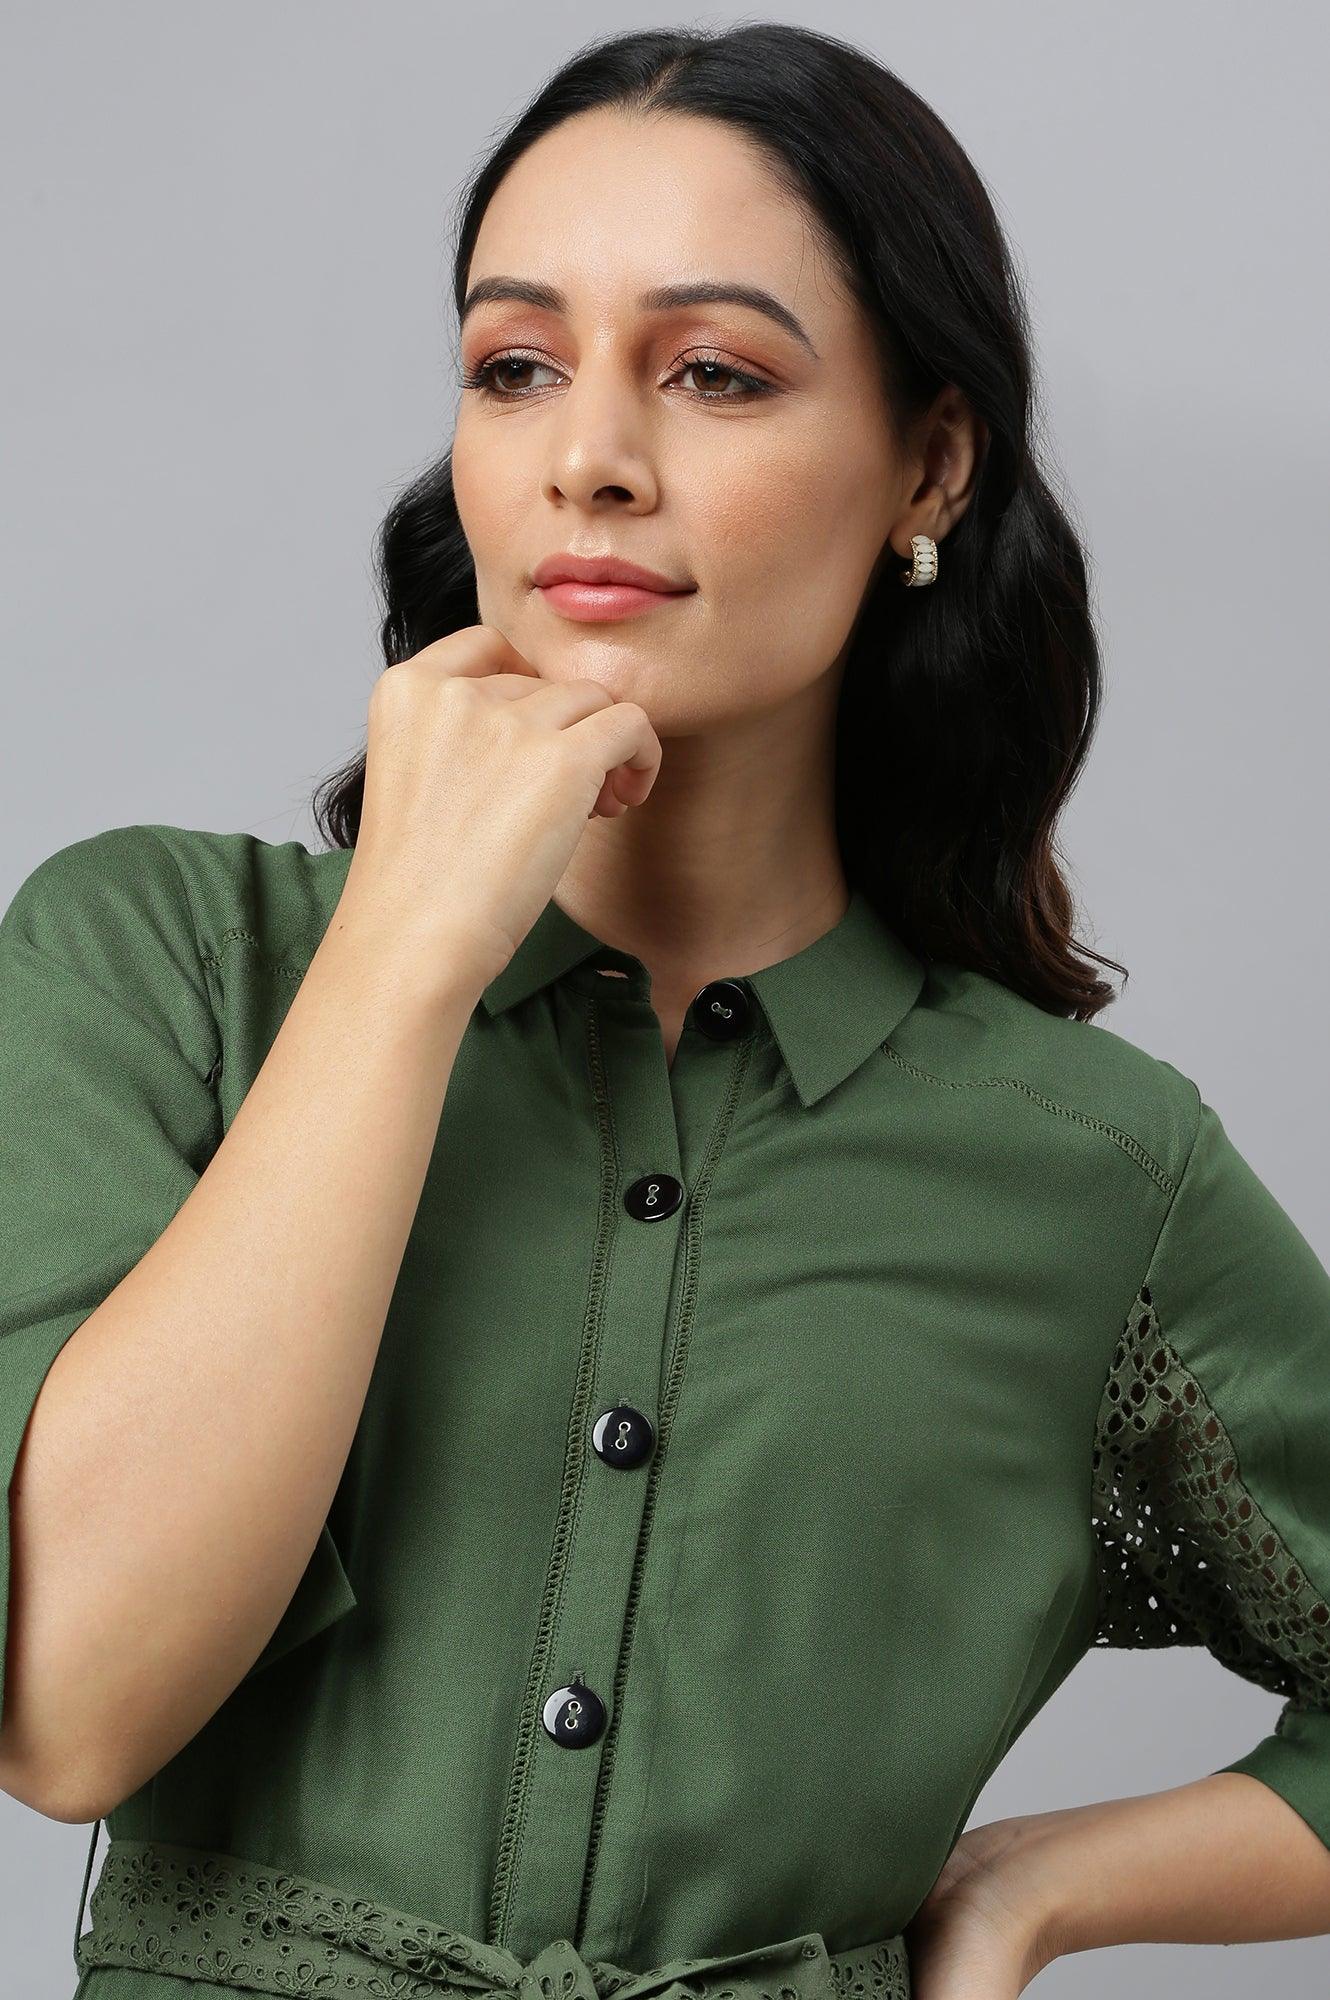 Green A-Line Embroidered Shirt Dress With Schiffli Belt - wforwoman